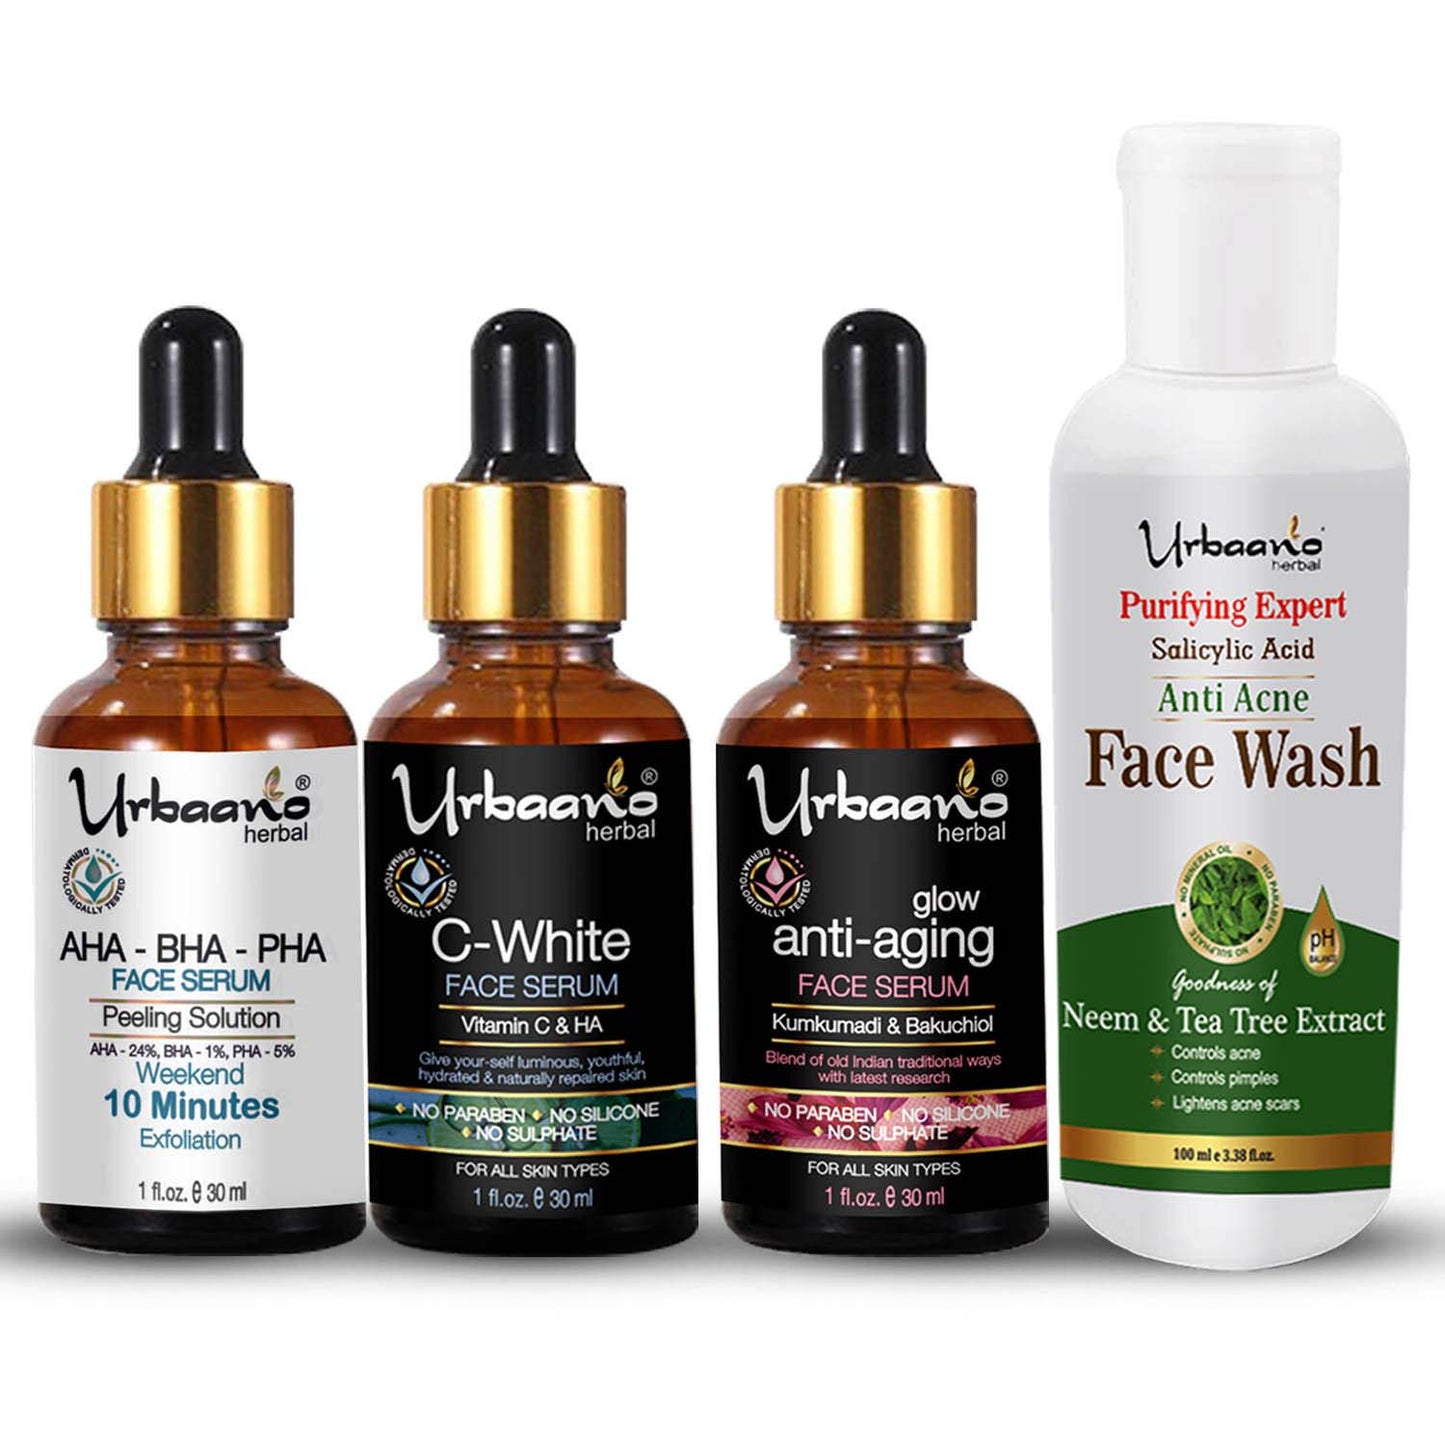 urbaano herbal glow white serum kit - Aha serum, vitamin c serum, kumkumadi tailam, anti acne face wash